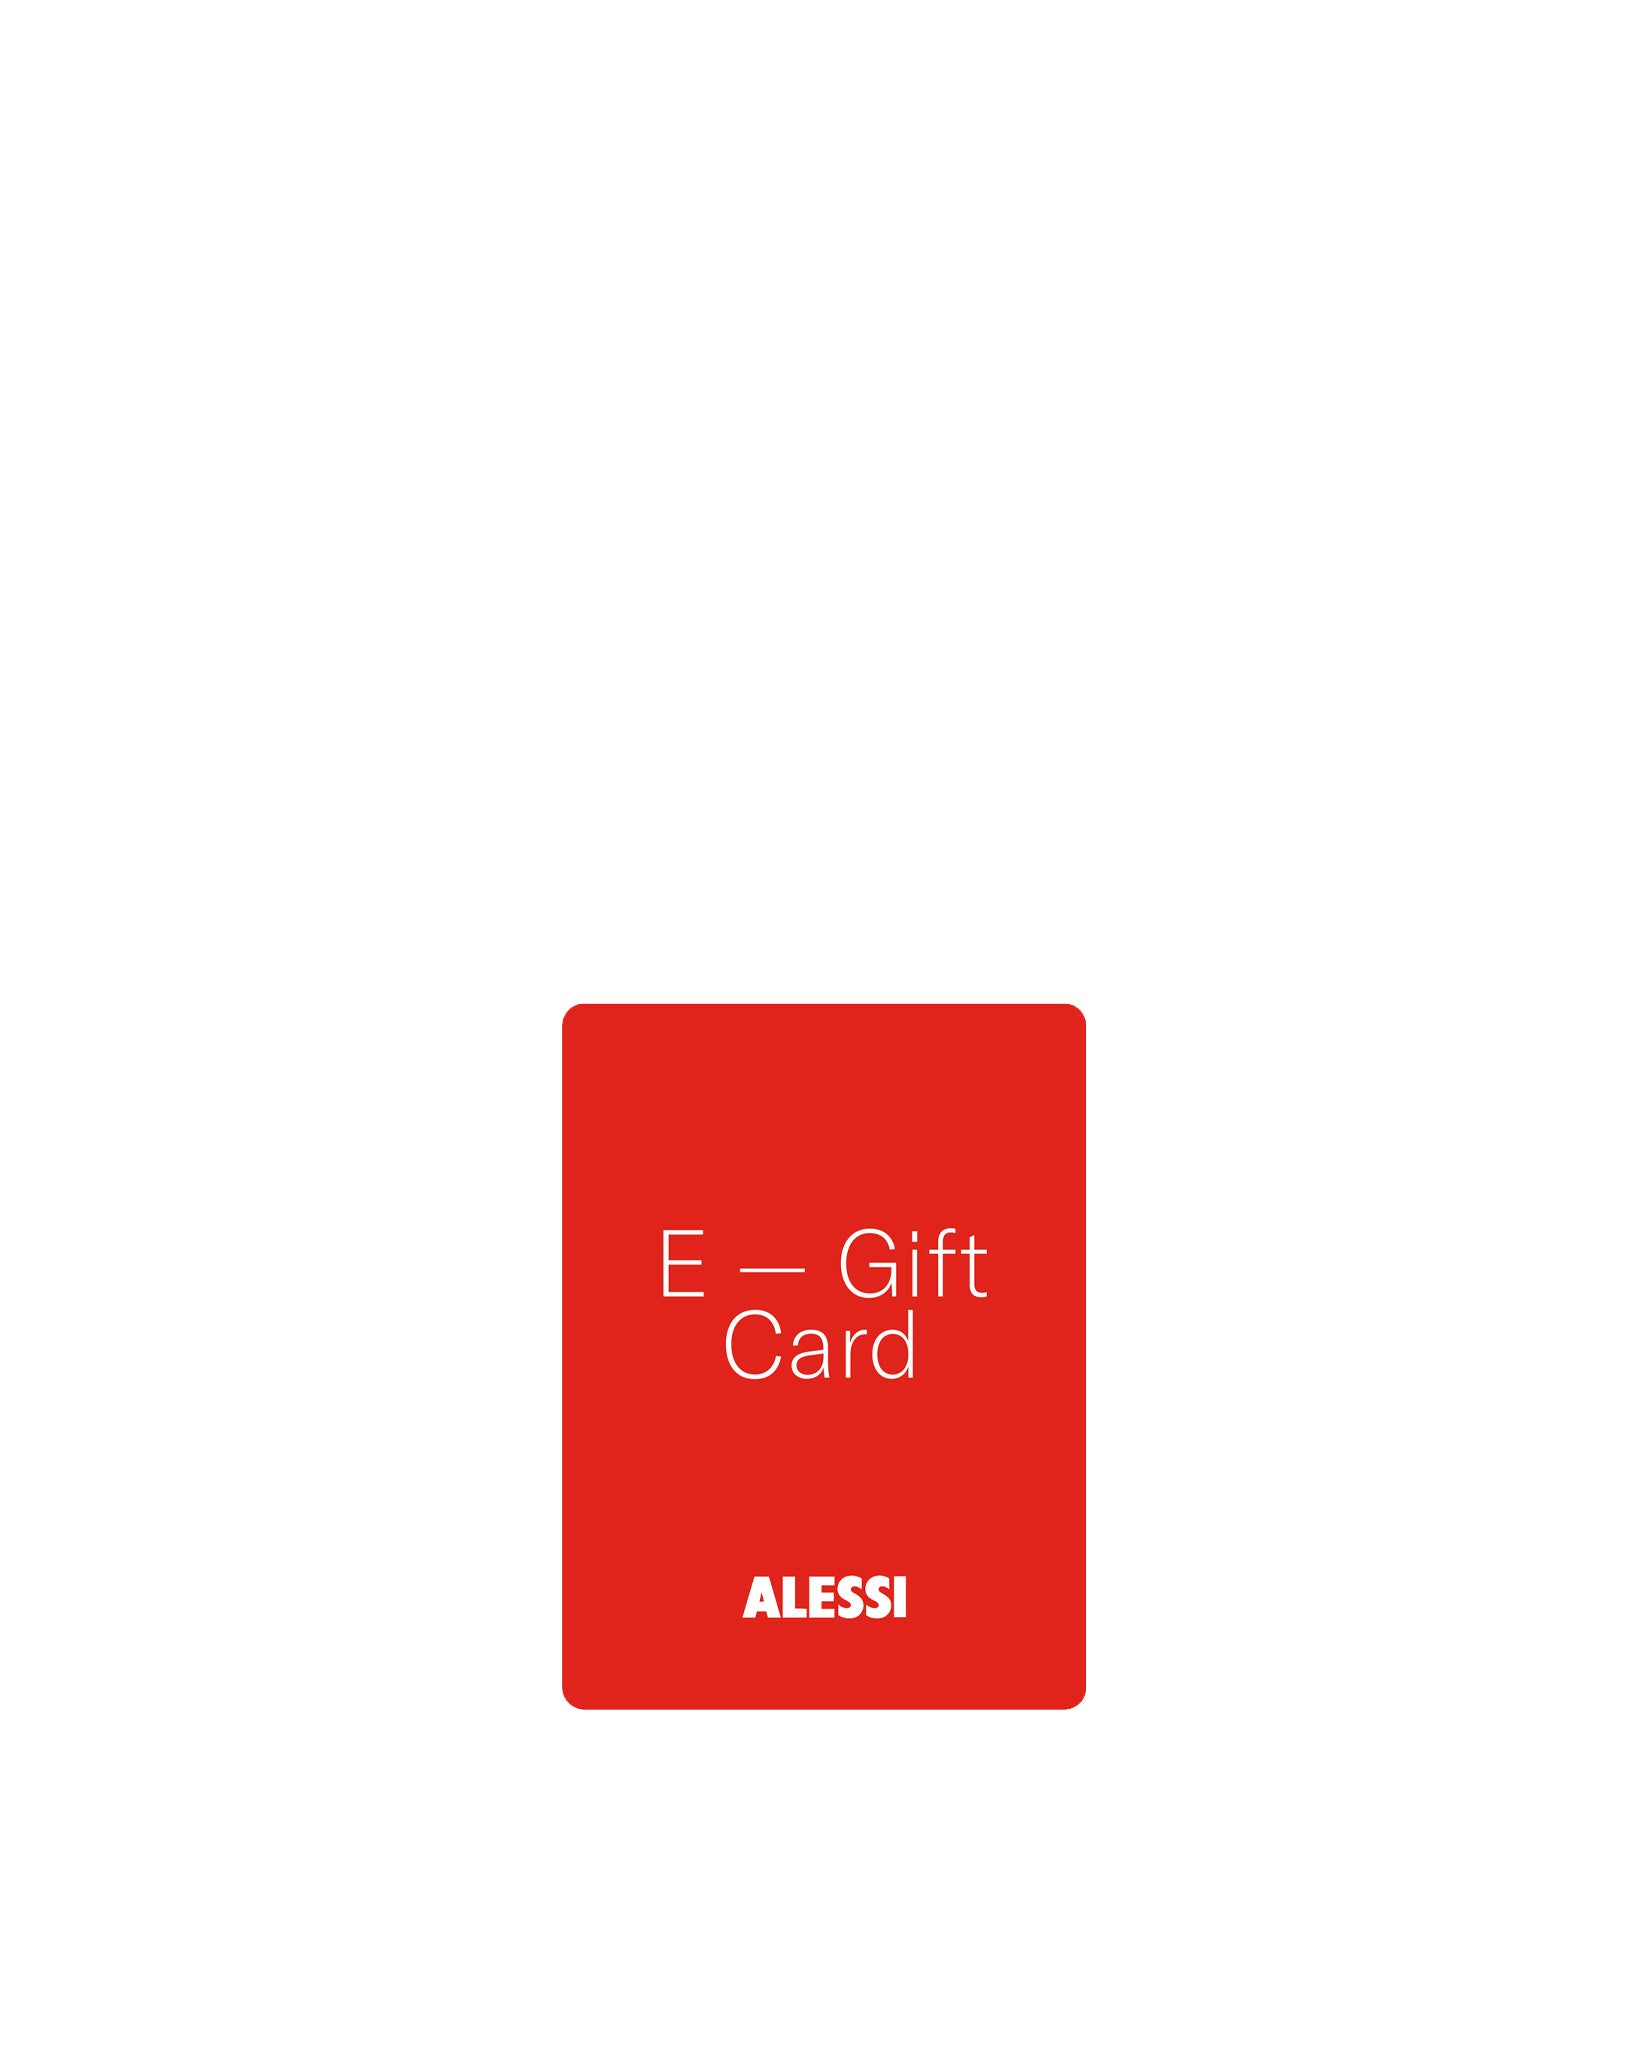 E-Gift Card – Alessi USA Inc